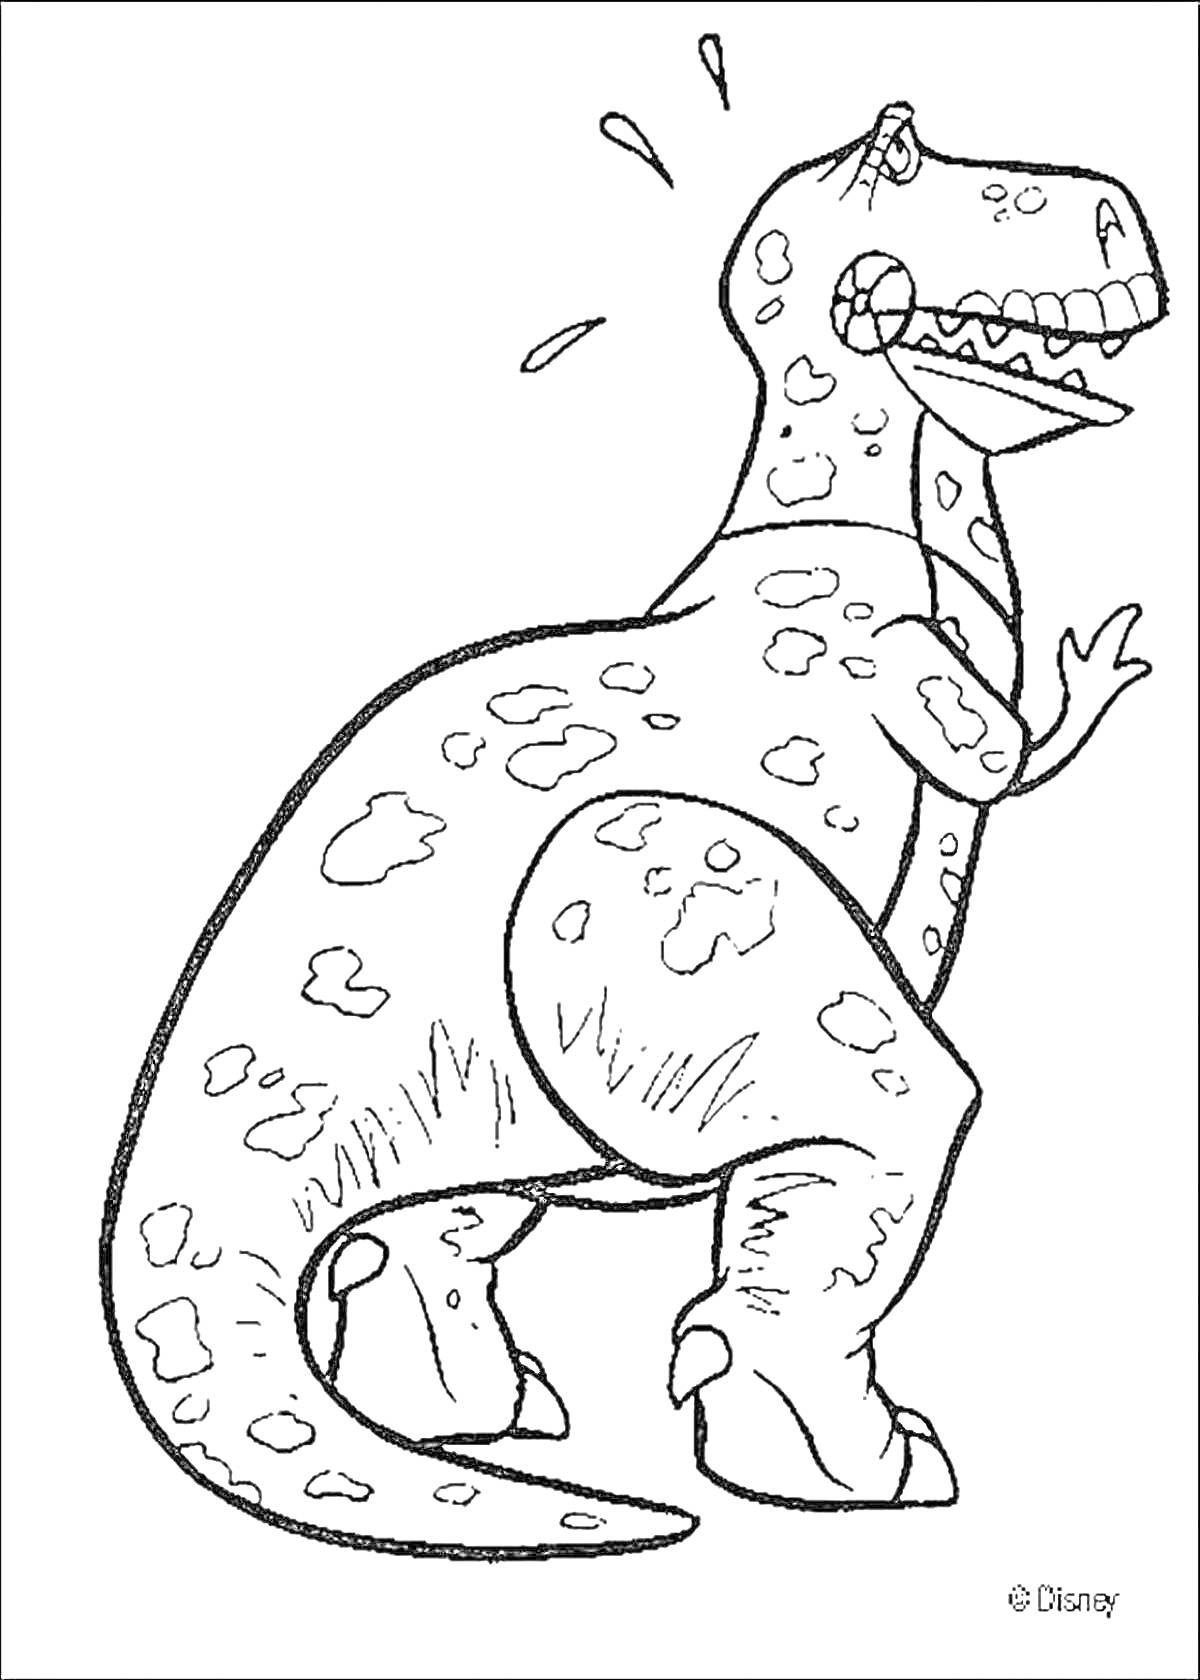 Динозавр с пятнами и каплями пота